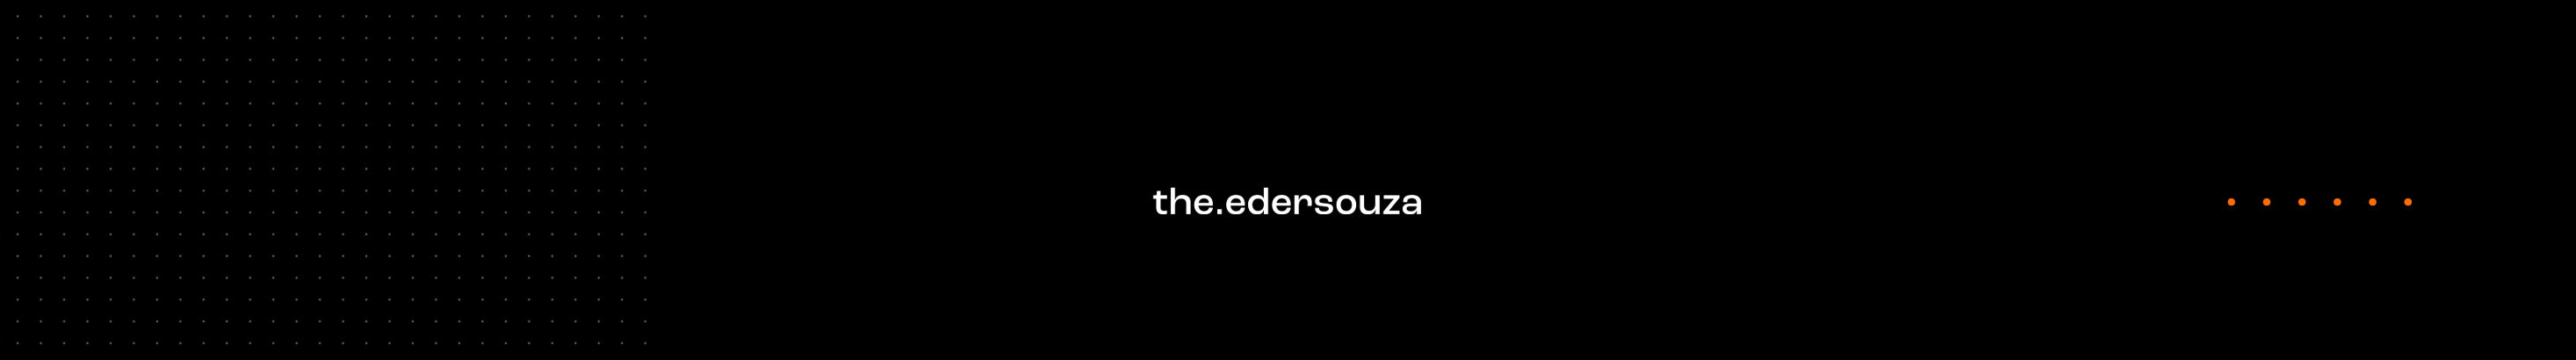 Profielbanner van Eder Souza